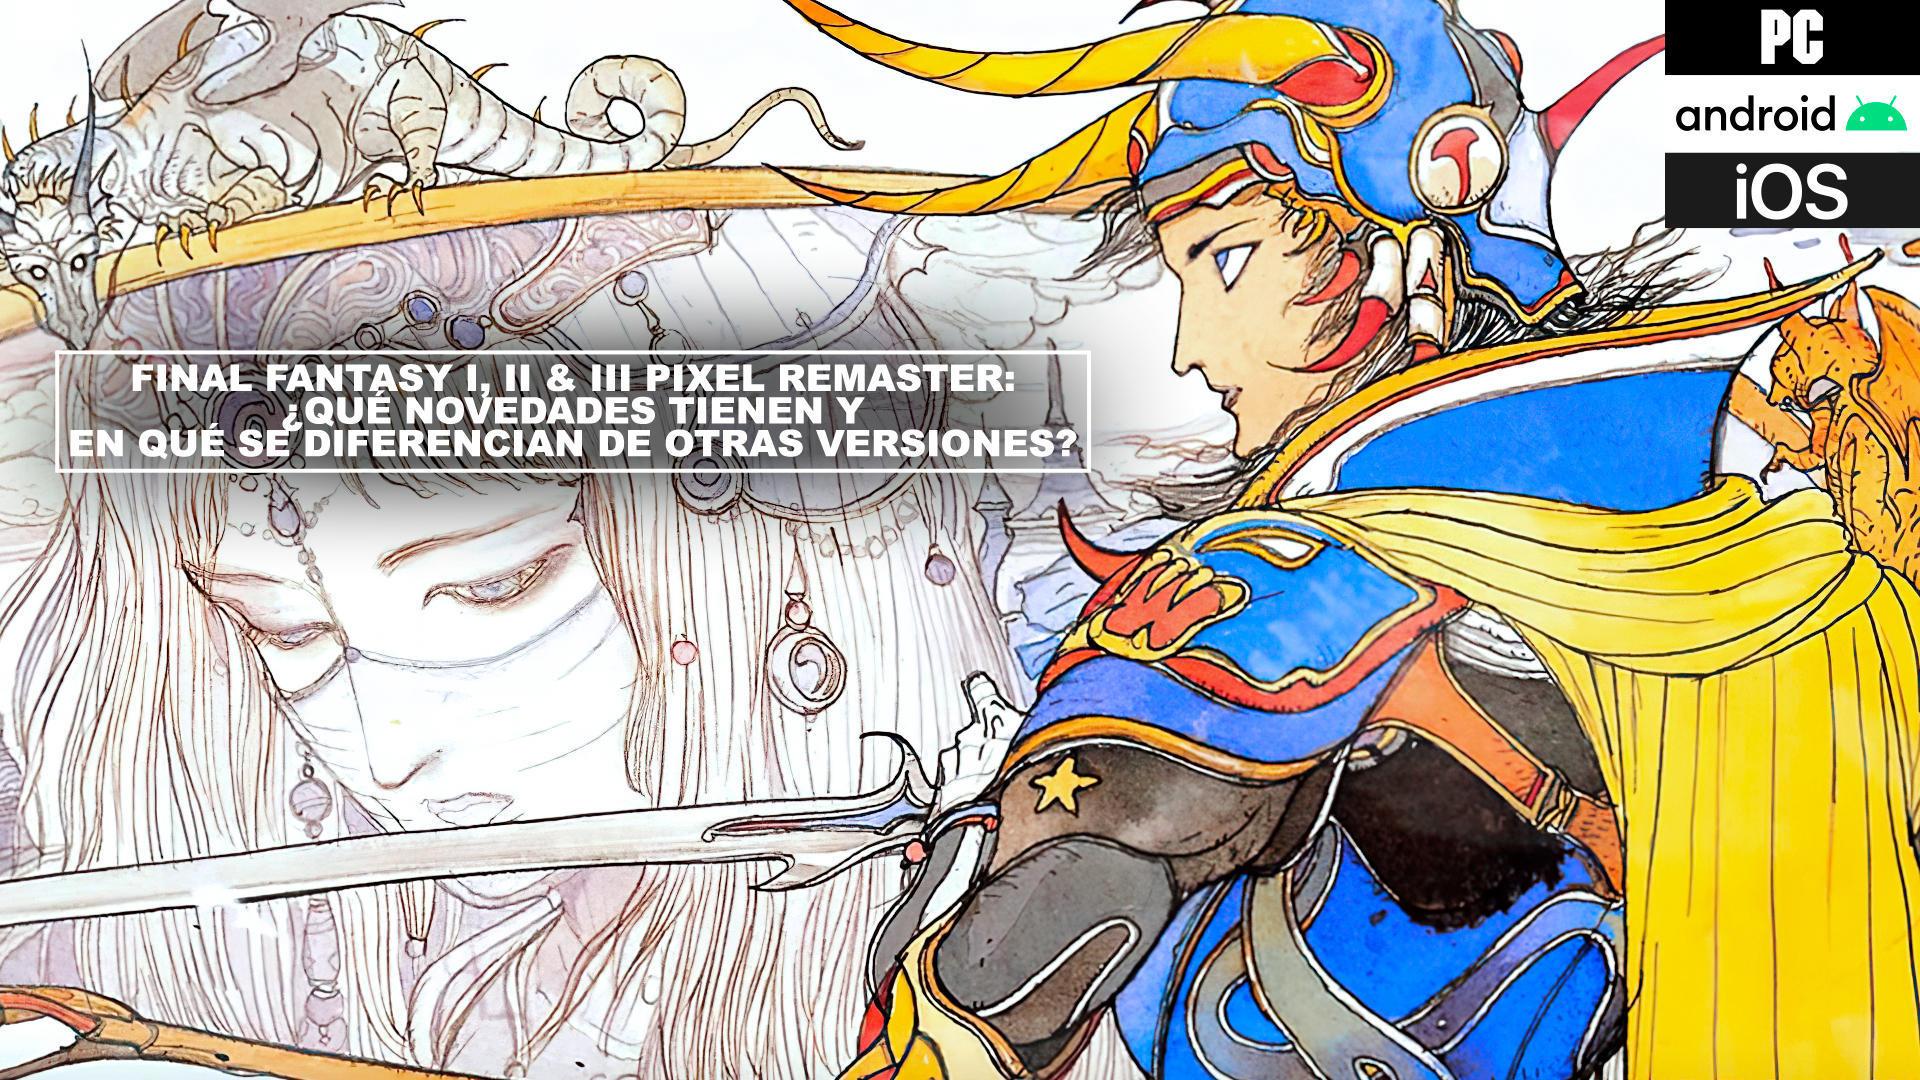 Final Fantasy I, II & III Pixel Remaster: qu novedades tienen y en qu se diferencian de otras versiones?